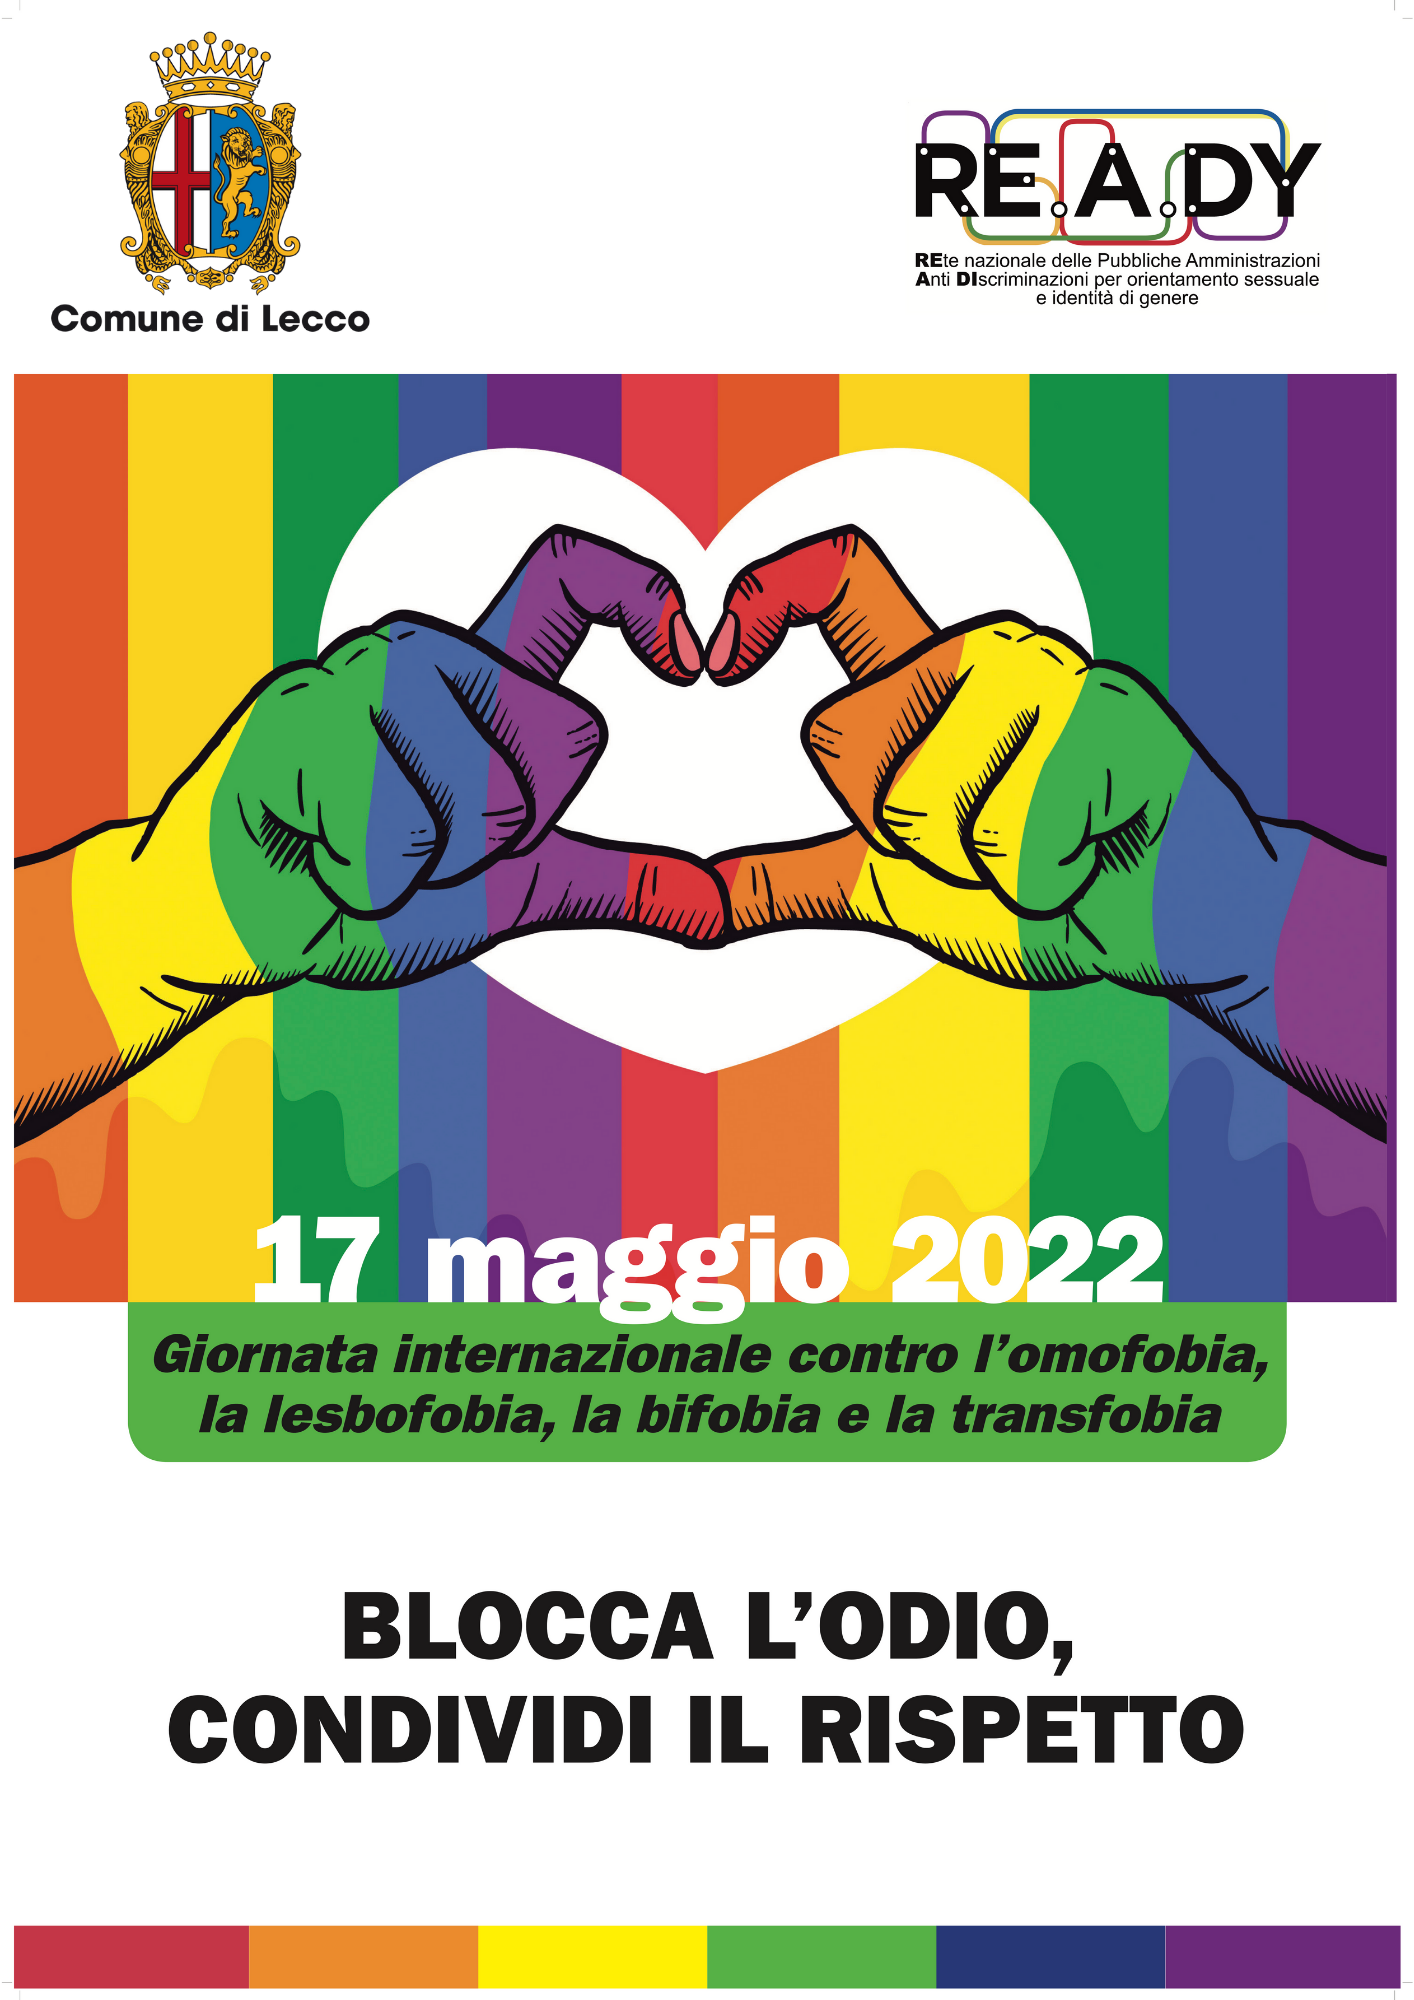 Locandina per la giornata contro l'omofobia